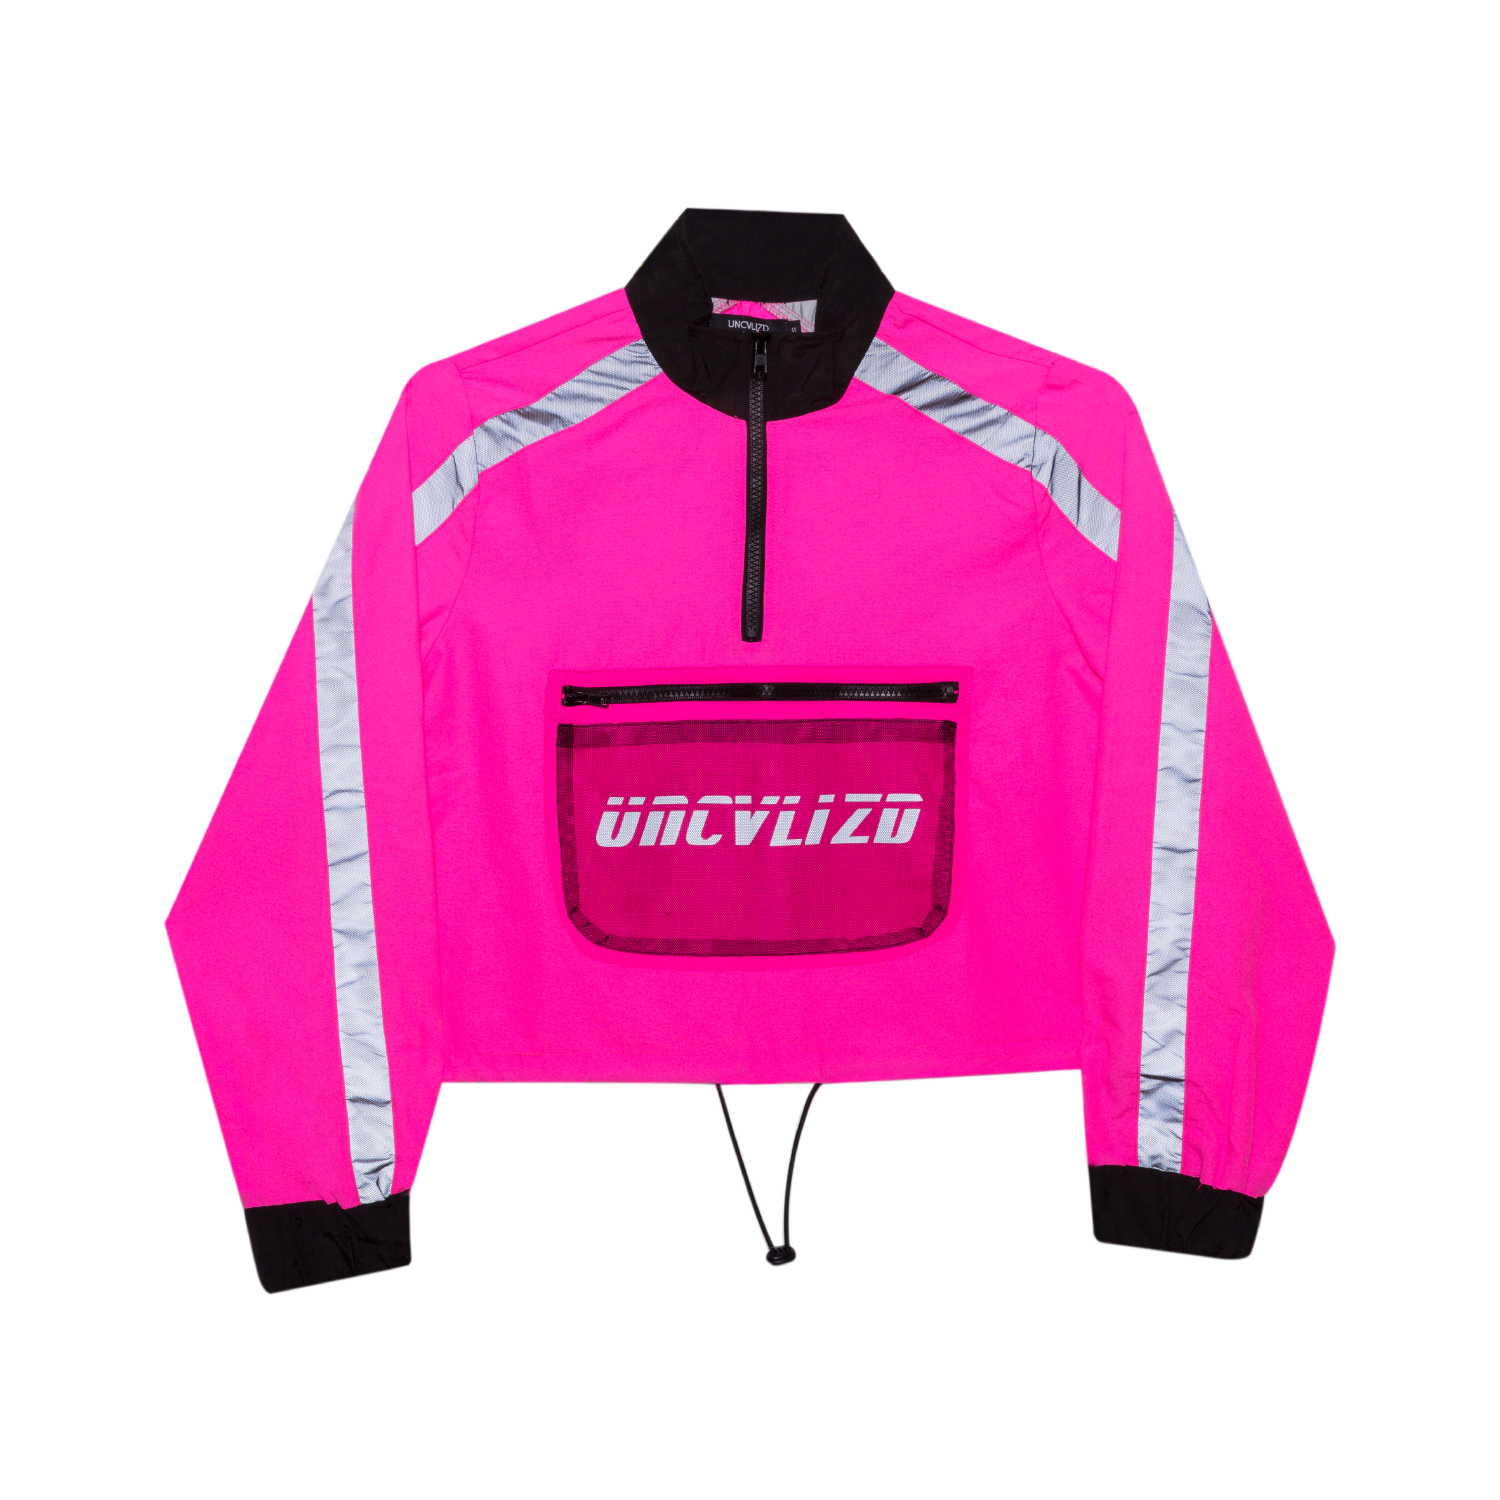 Virtue Women's Jacket - Neon Pink — UNCVLIZD